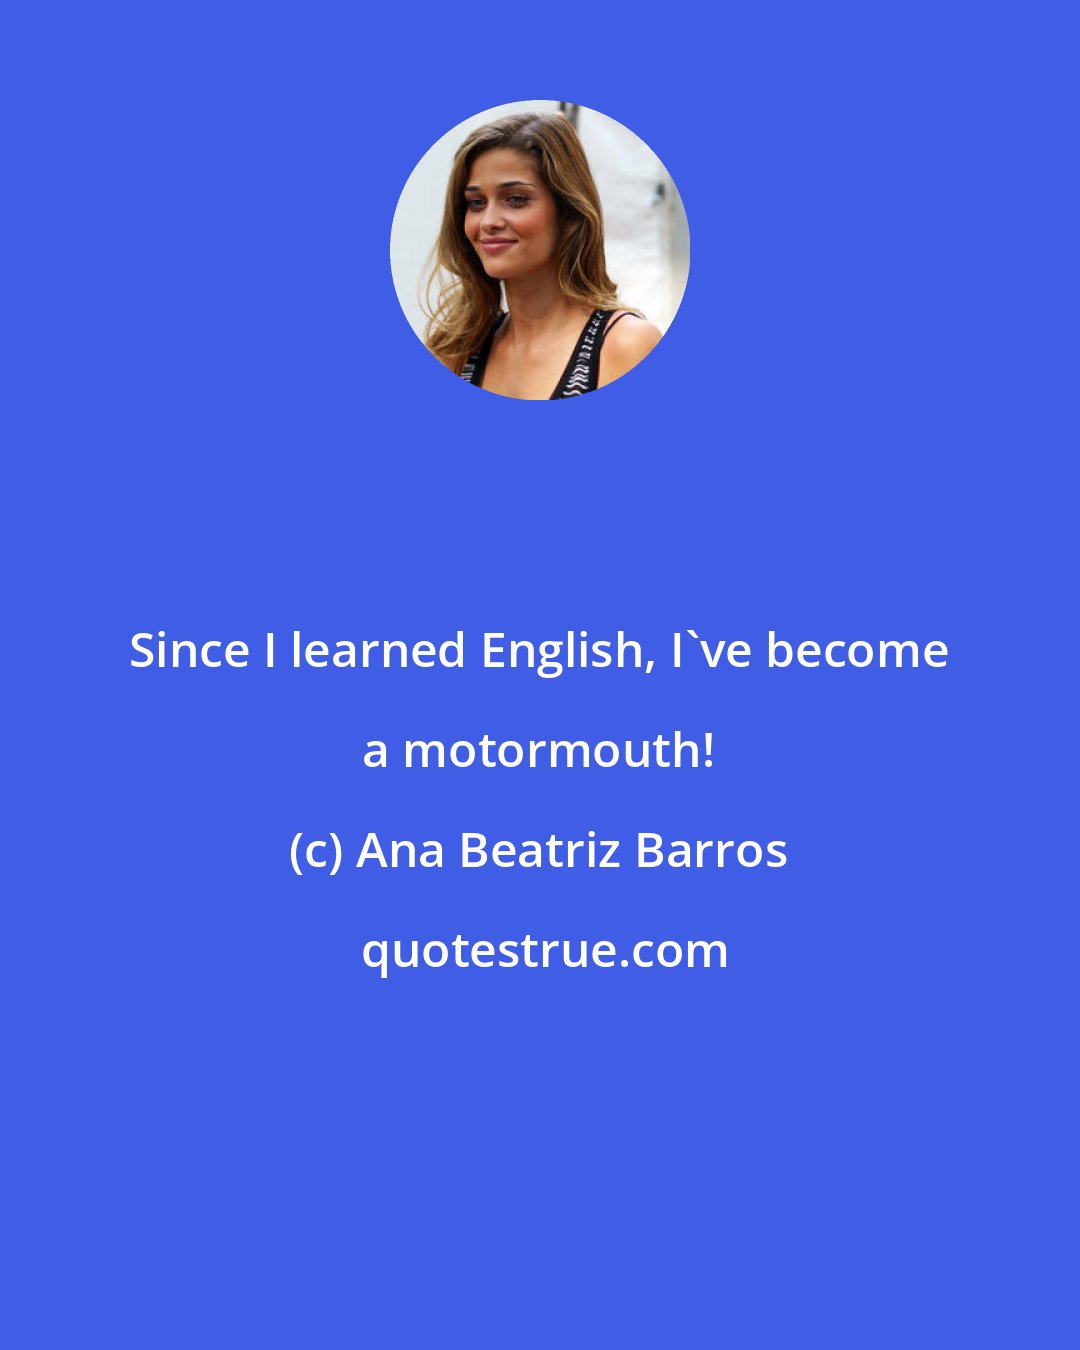 Ana Beatriz Barros: Since I learned English, I've become a motormouth!